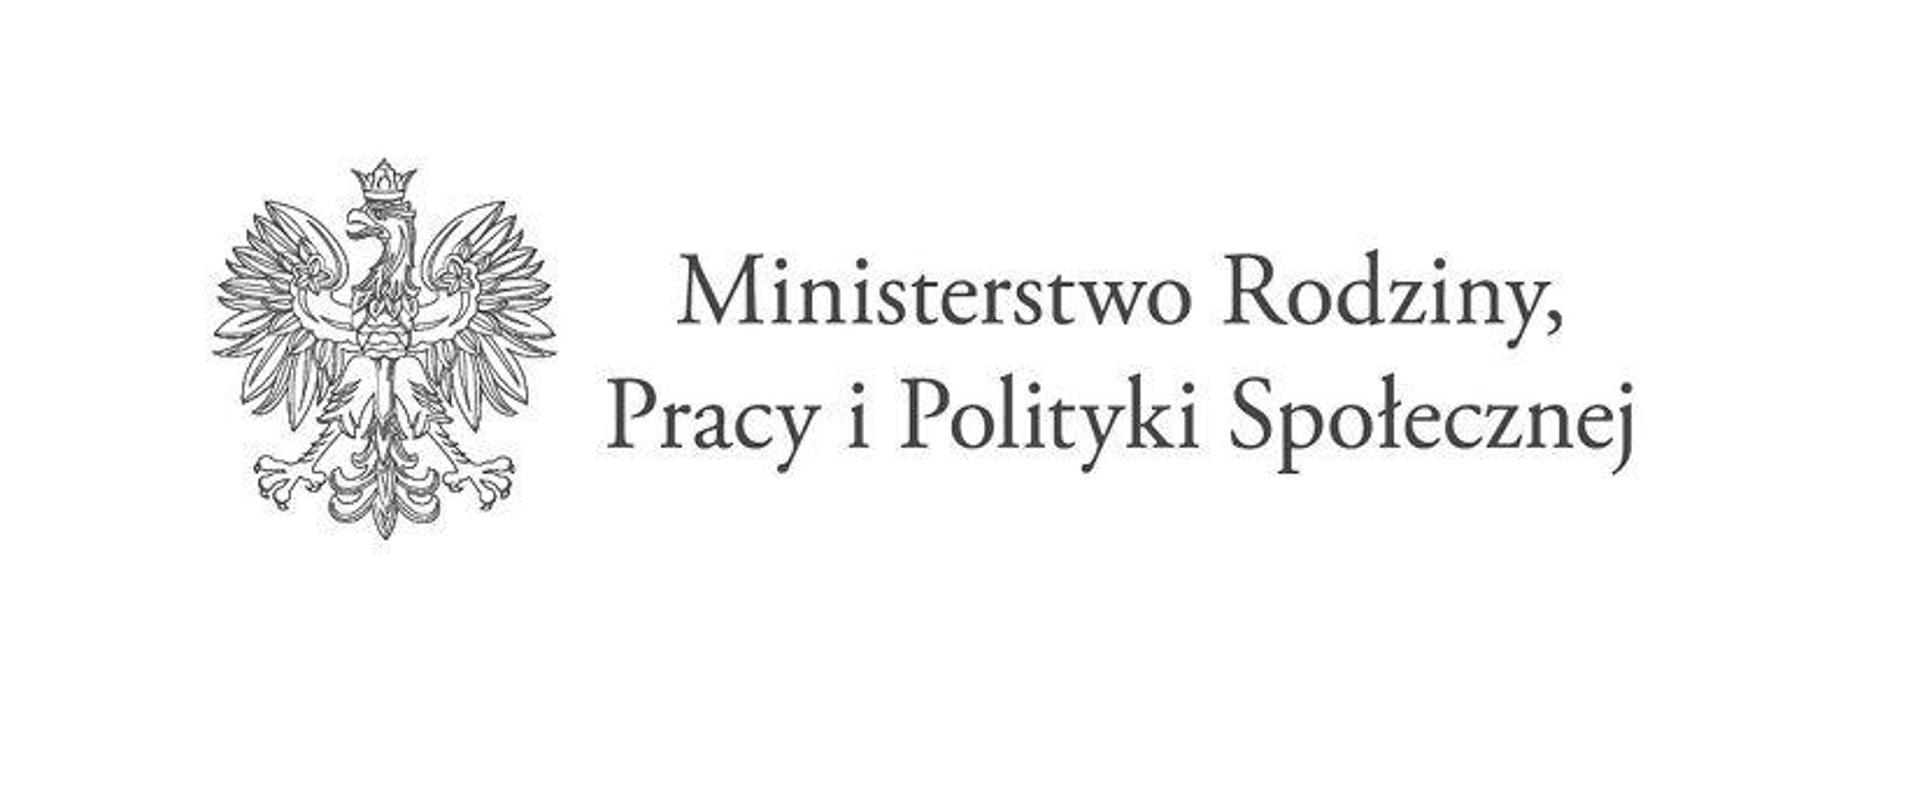 Godło Państwowe i napis Ministerstwo Rodziny, Pracy i Polityki Społecznej. 